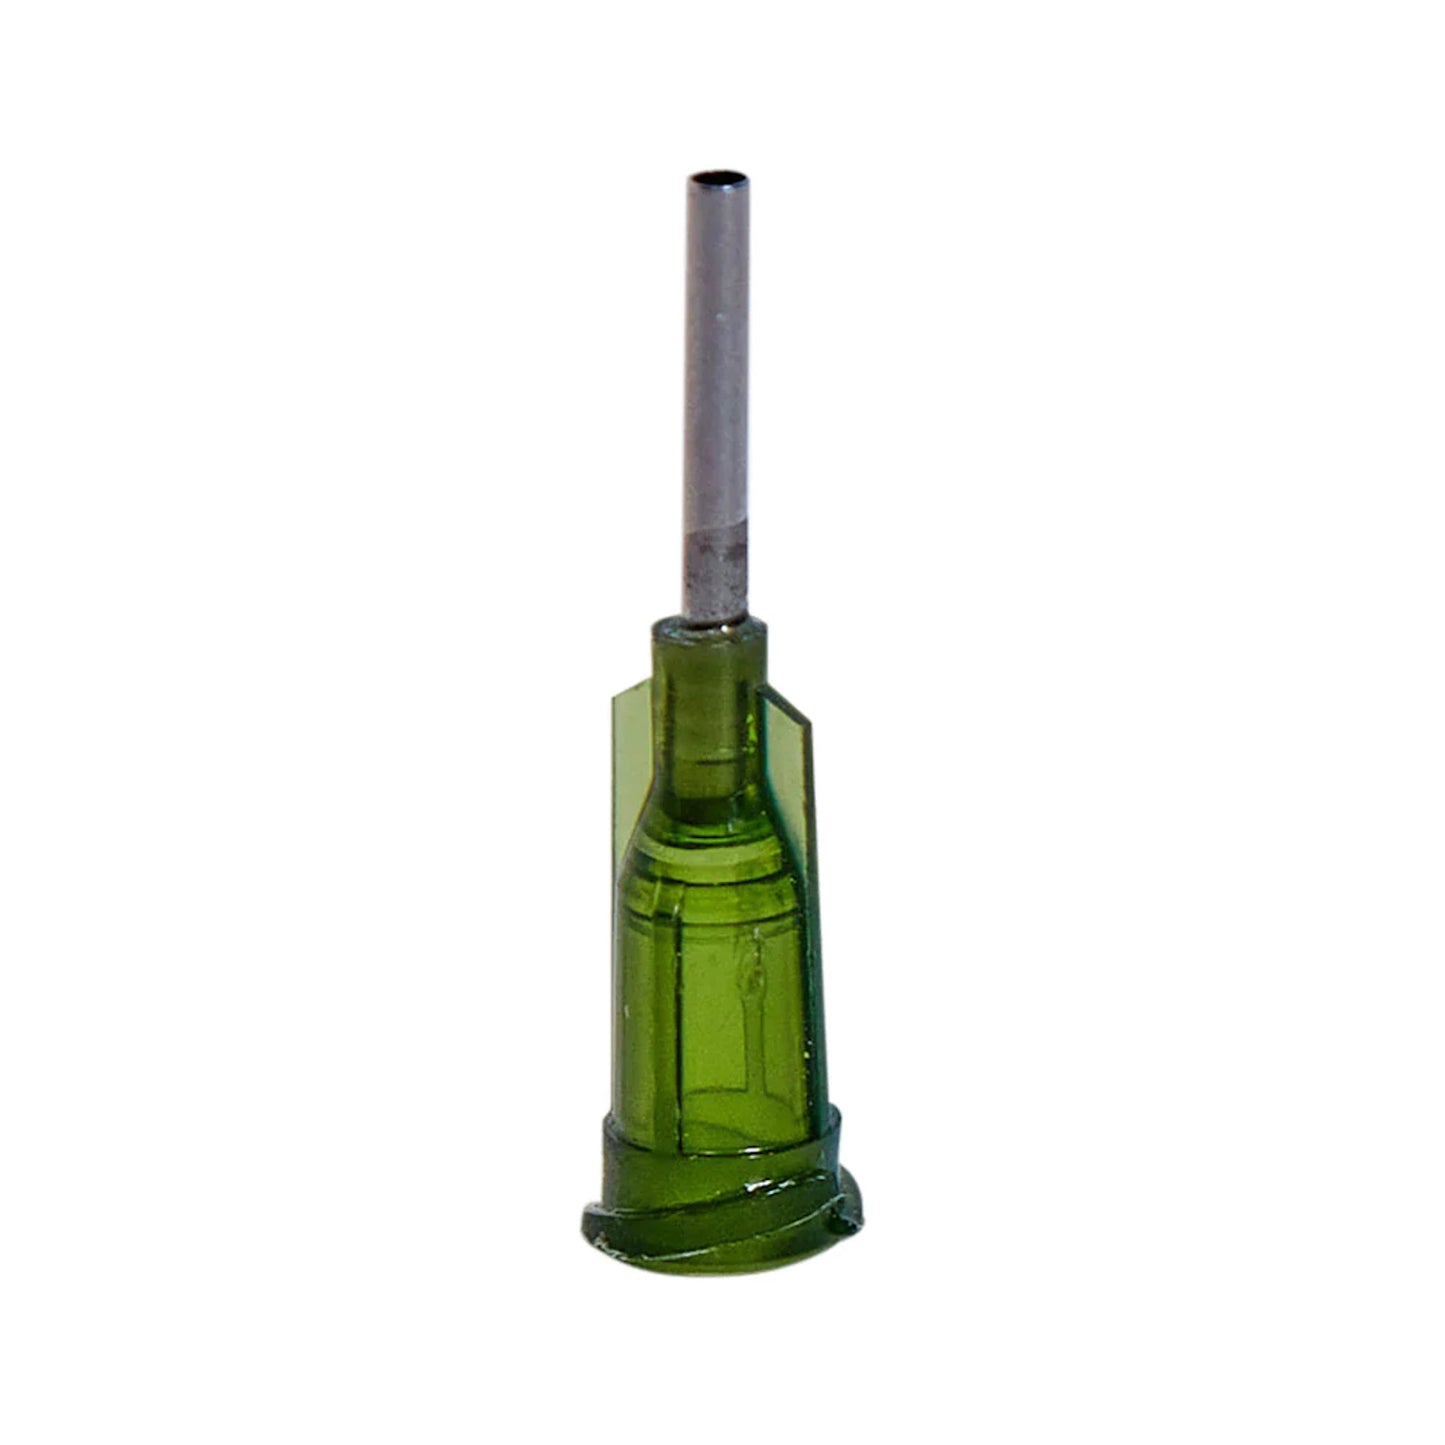 Metal blunt dispensing tips for luer lock syringes 1/4"